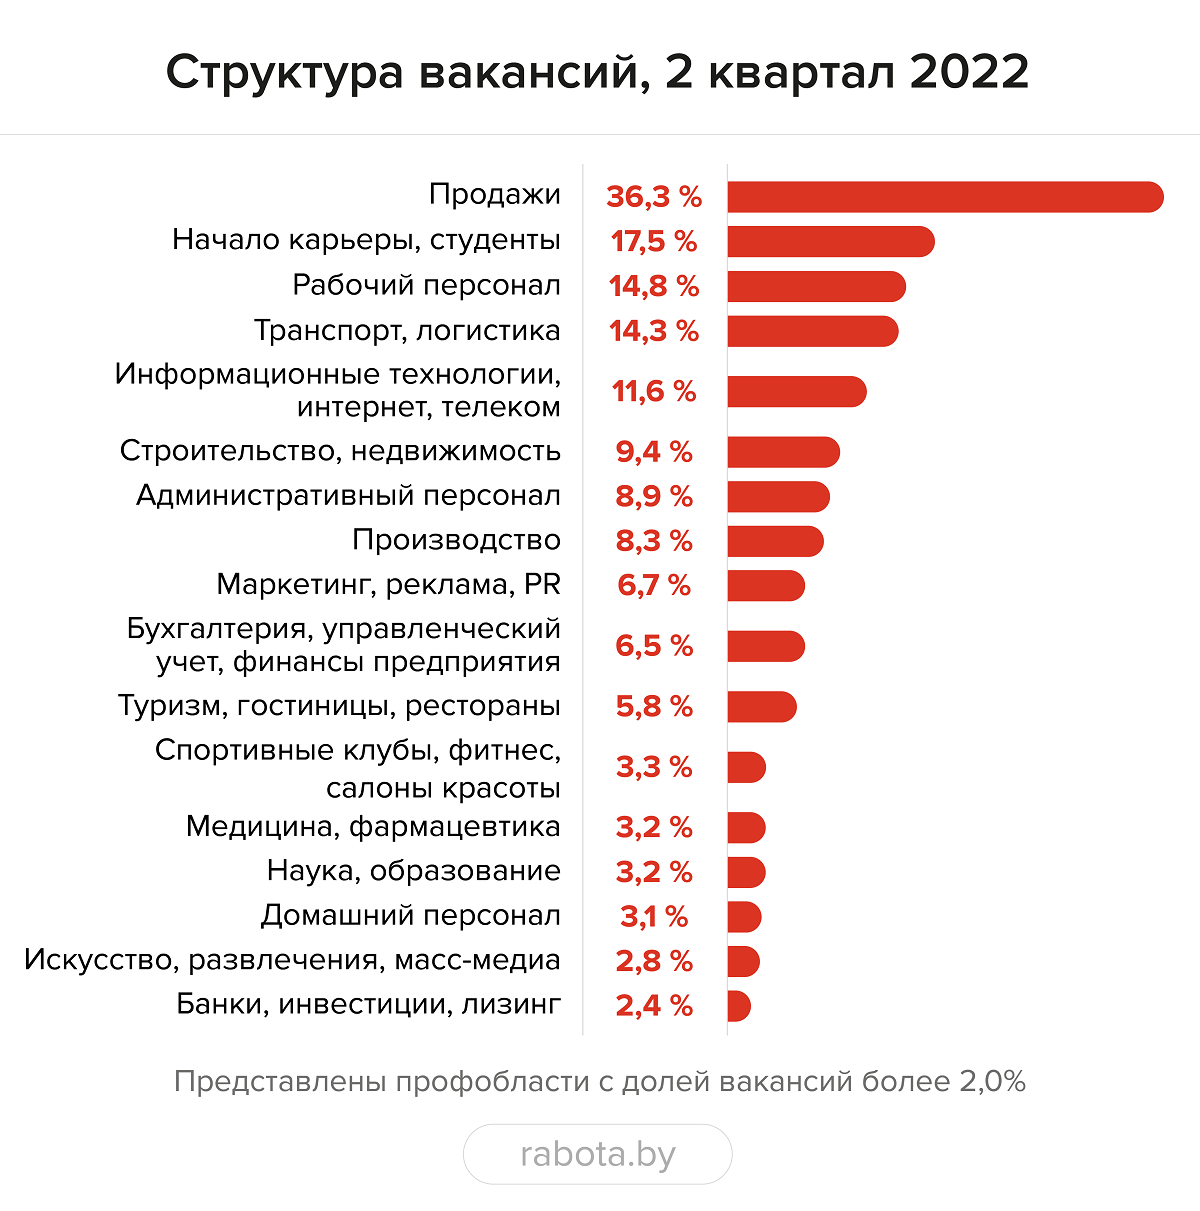 IT-сфера больше не лидер по количеству вакансий в Беларуси